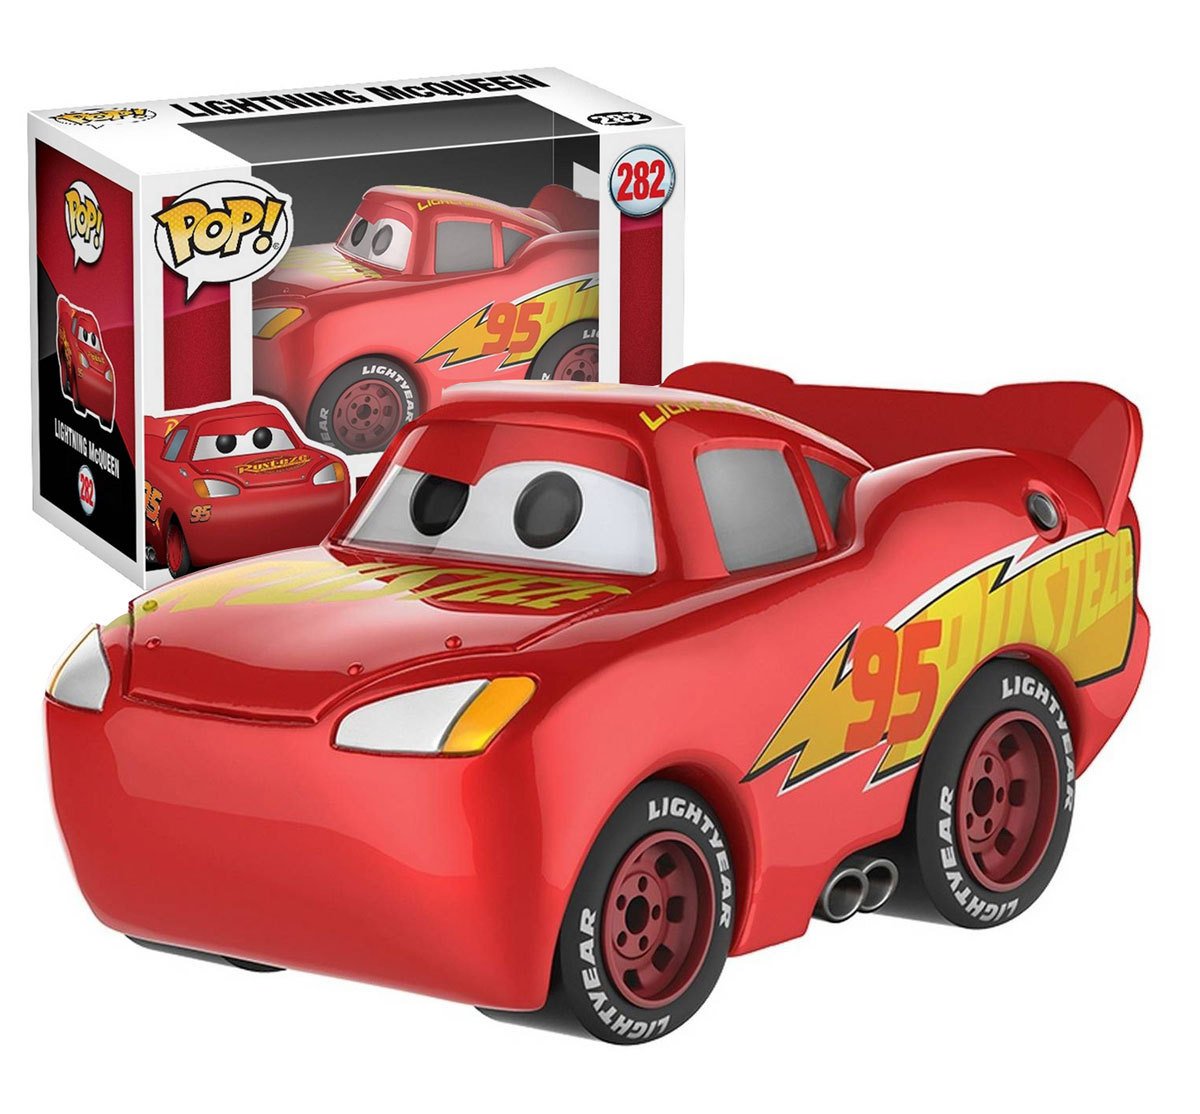 Funko POP! Disney Pixar Cars 3 Lightning McQueen Target Exclusive